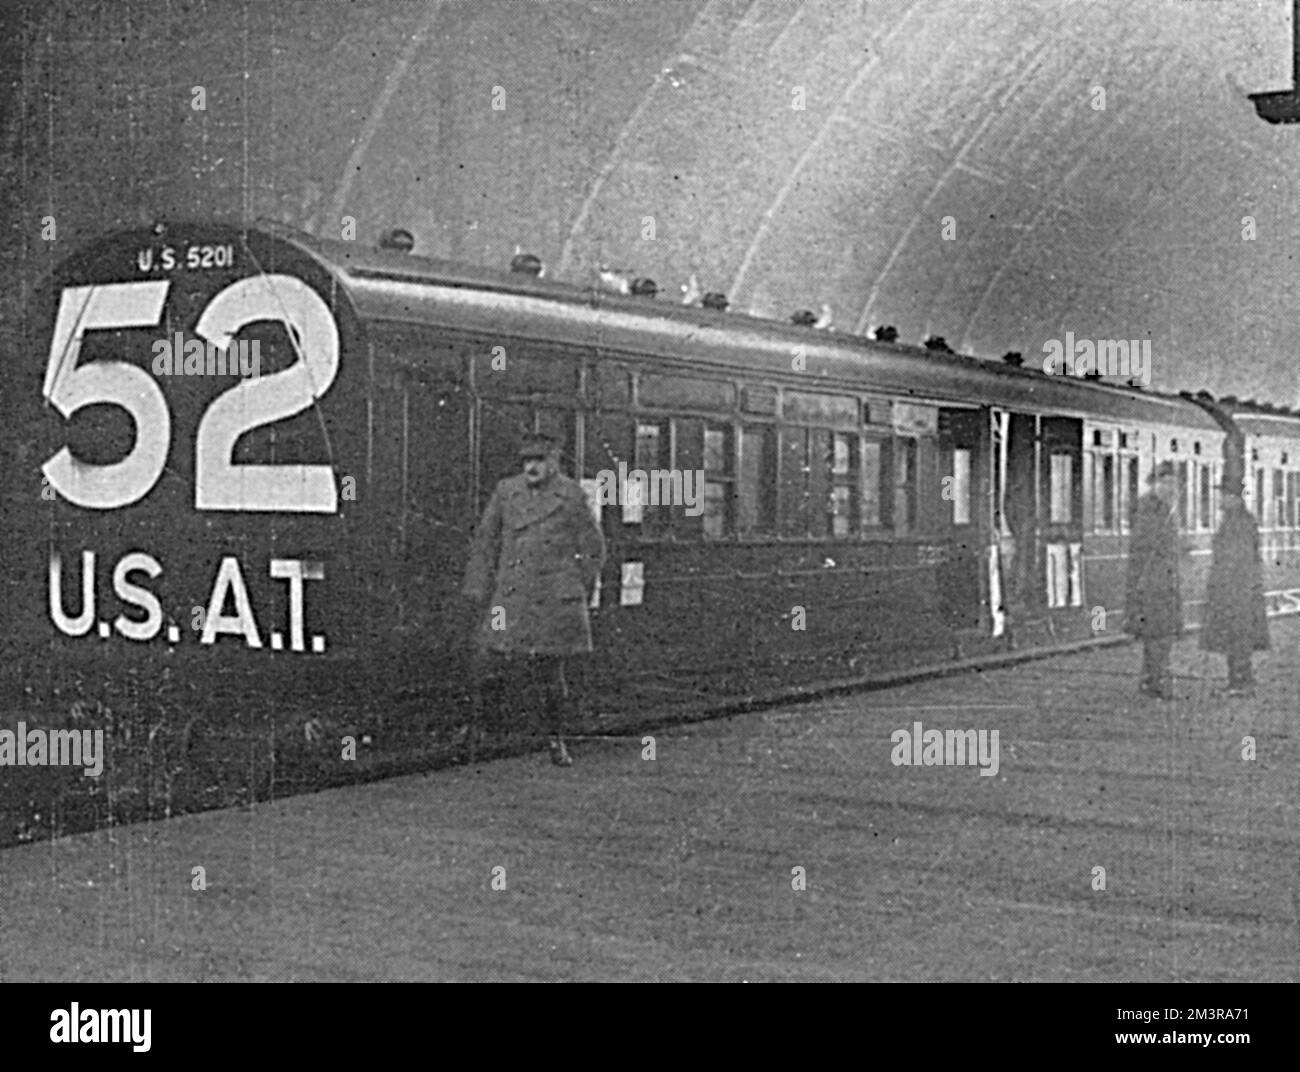 Il primo treno di ambulanza costruito dalla Midland Railway Company per l'esercito americano in esposizione e ispezionato da membri del pubblico alla stazione di St Pancras il 31 dicembre 1917. Sul retro del treno sono riportate grandi cifre, il numero di identificazione e le iniziali. Data: 1918 Foto Stock